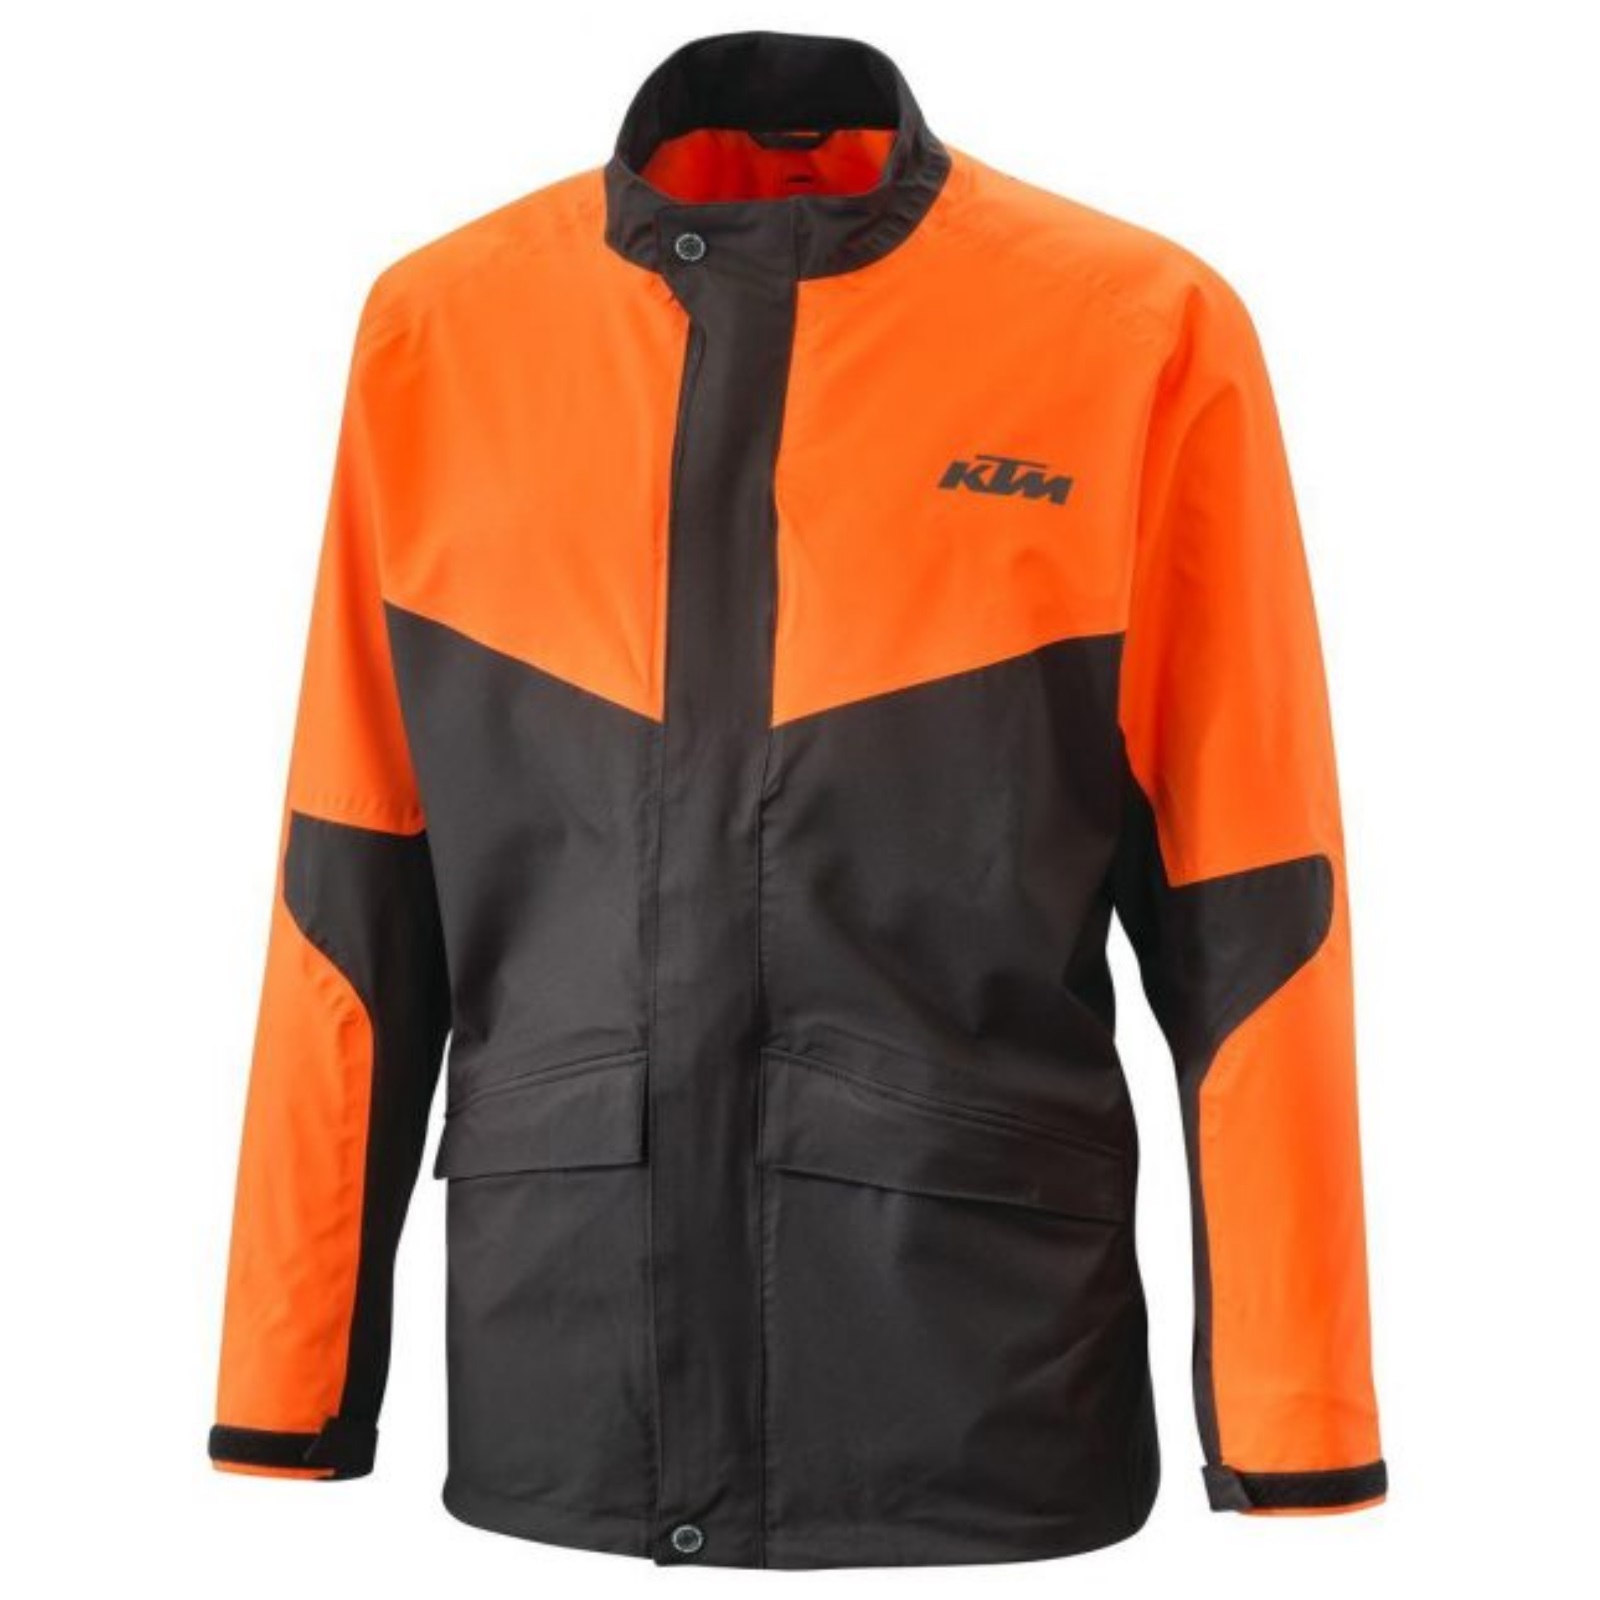 KTM Rain Jacket Black Orange | FREE UK DELIVERY | Flexible Ways To Pay ...